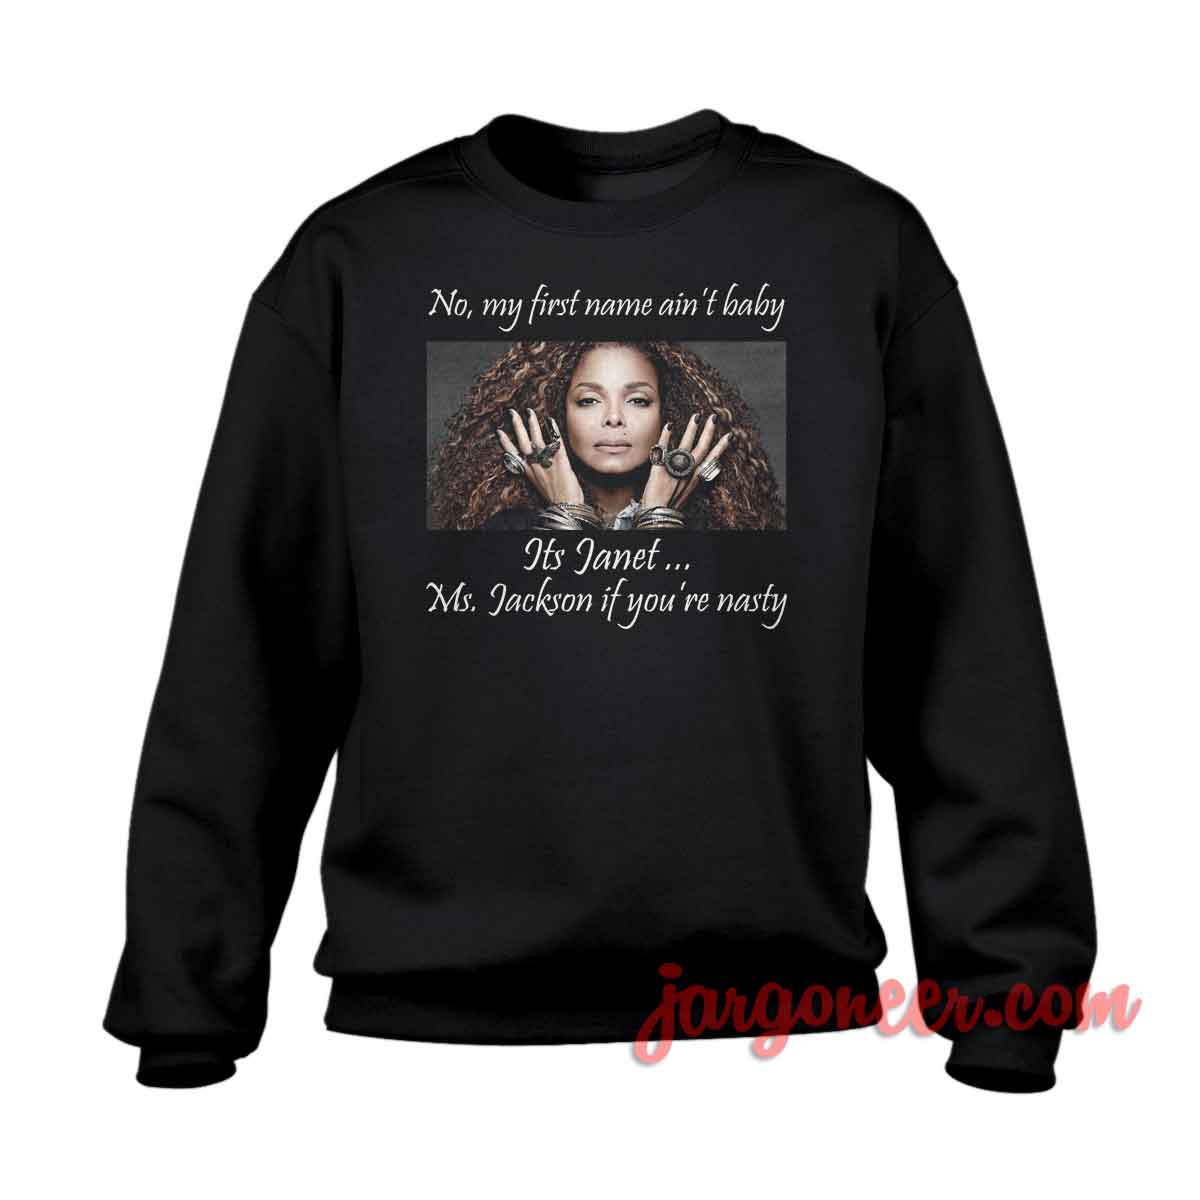 Janet Jackson - Shop Unique Graphic Cool Shirt Designs